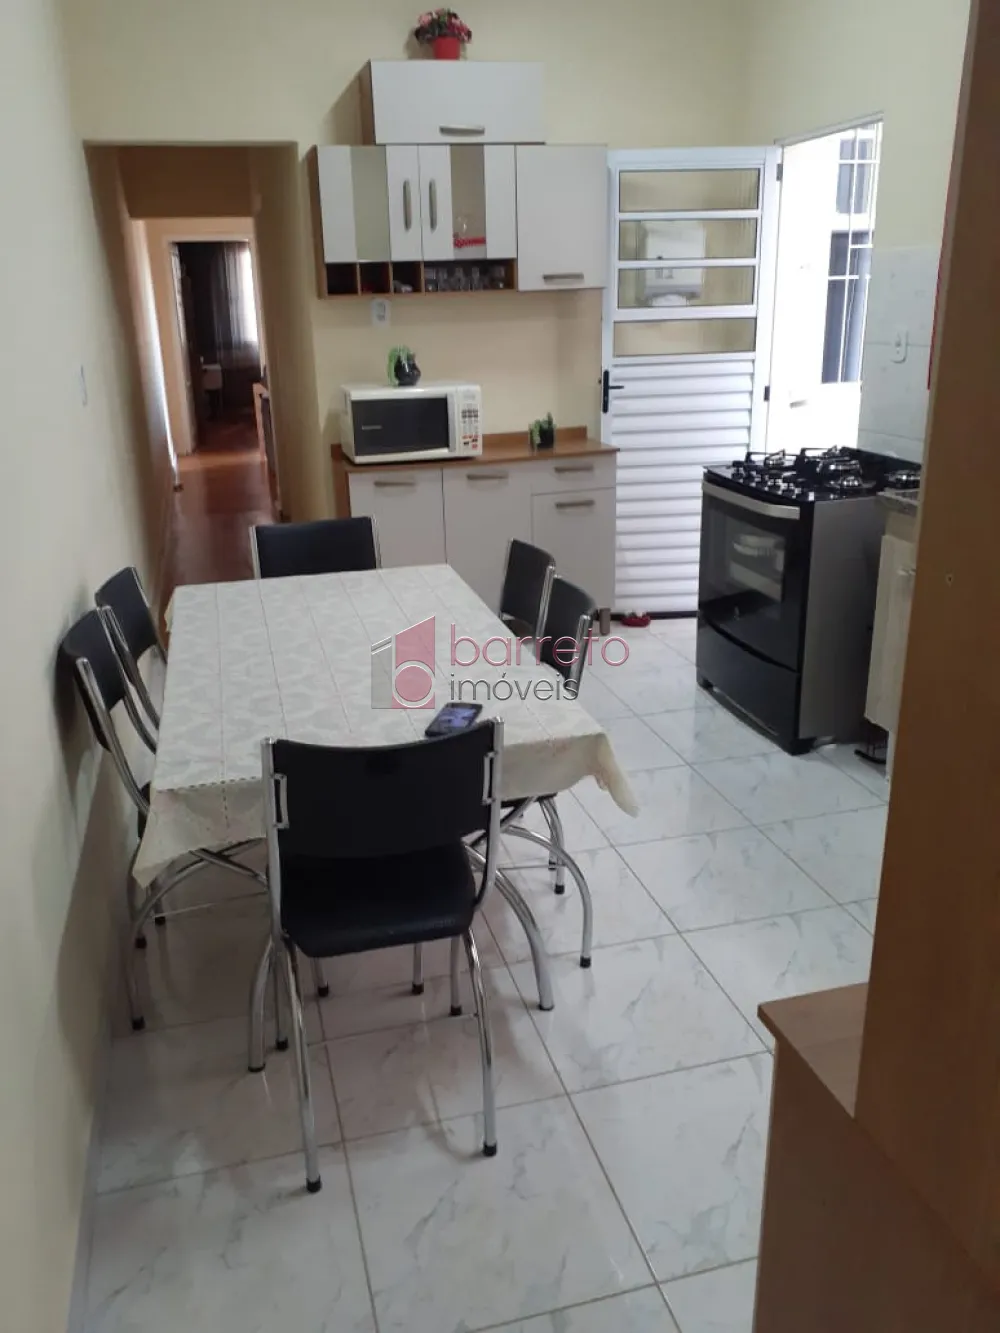 Comprar Casa / Padrão em Jundiaí R$ 370.000,00 - Foto 9